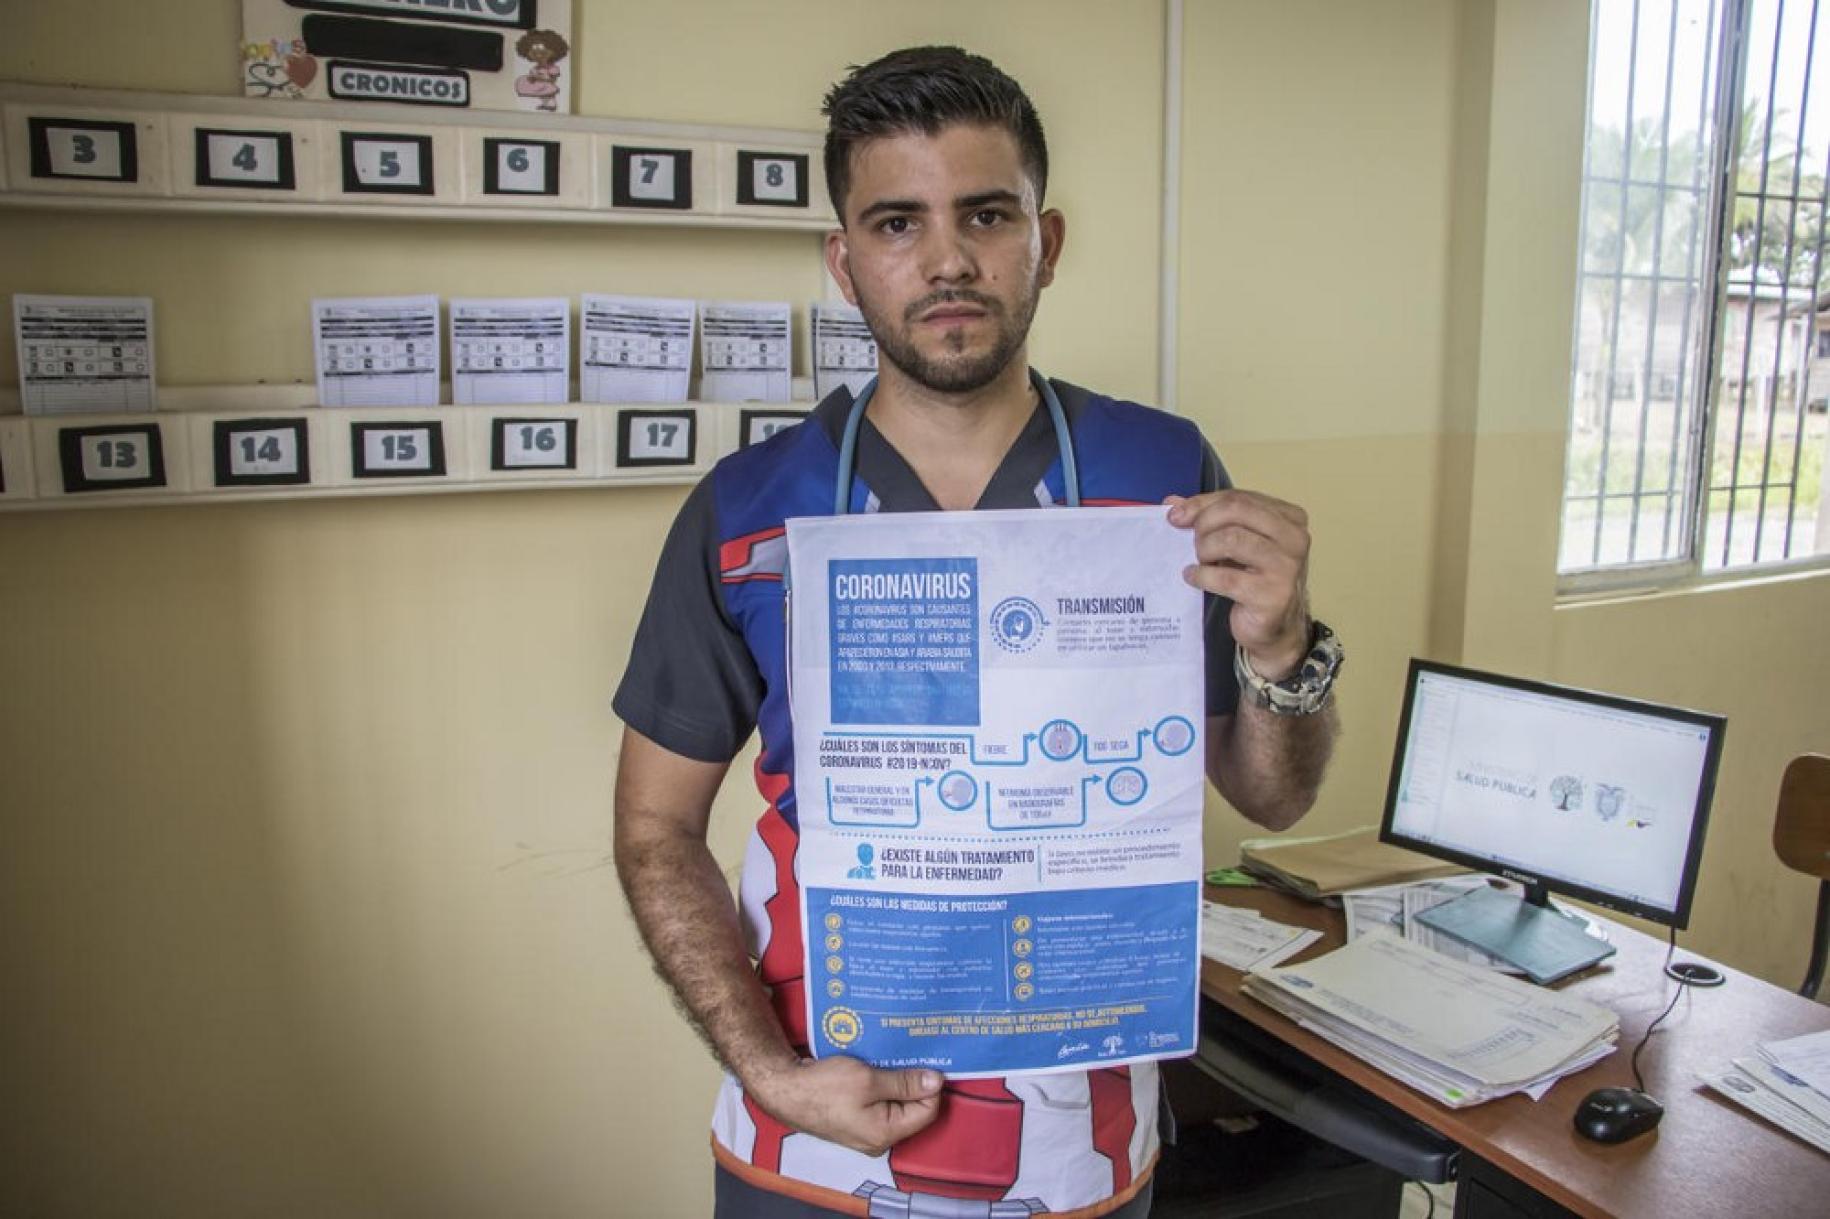 Un homme se tient debout, dans un bureau, face à la caméra, en tenant entre les mains une affiche de prévention contre la COVID-19 en espagnol.